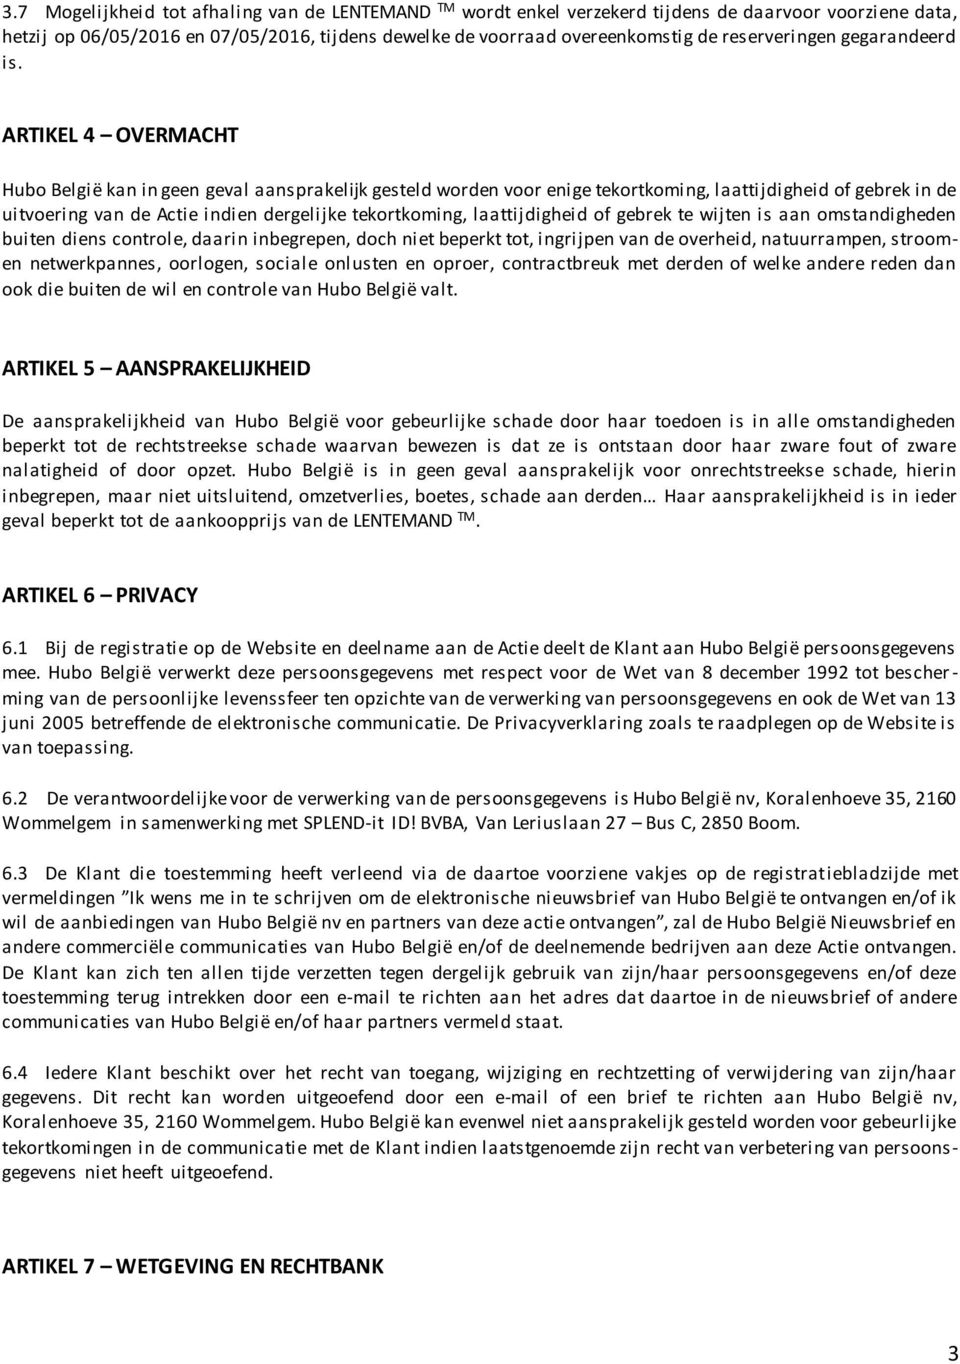 ARTIKEL 4 OVERMACHT Hubo België kan in geen geval aansprakelijk gesteld worden voor enige tekortkoming, laattijdigheid of gebrek in de uitvoering van de Actie indien dergelijke tekortkoming,